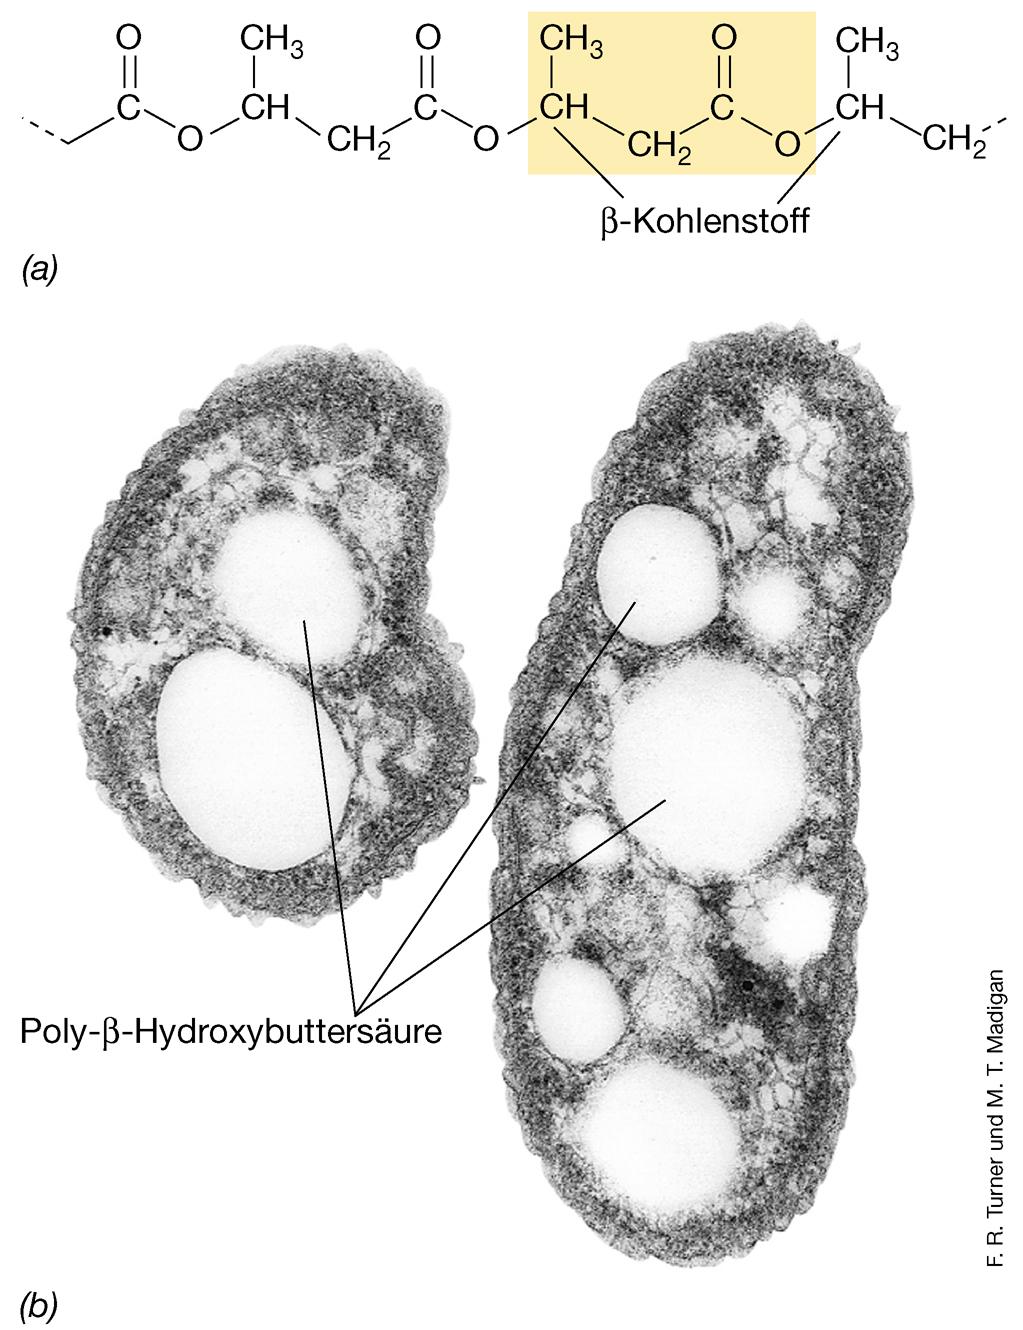 Zelleinschlüsse bei Prokaryoten (Bacteria & Archaea) am häufigsten: Poly-ß-Hydroxybuttersäure (PHB) Lipid Polymere bis C18 bilden